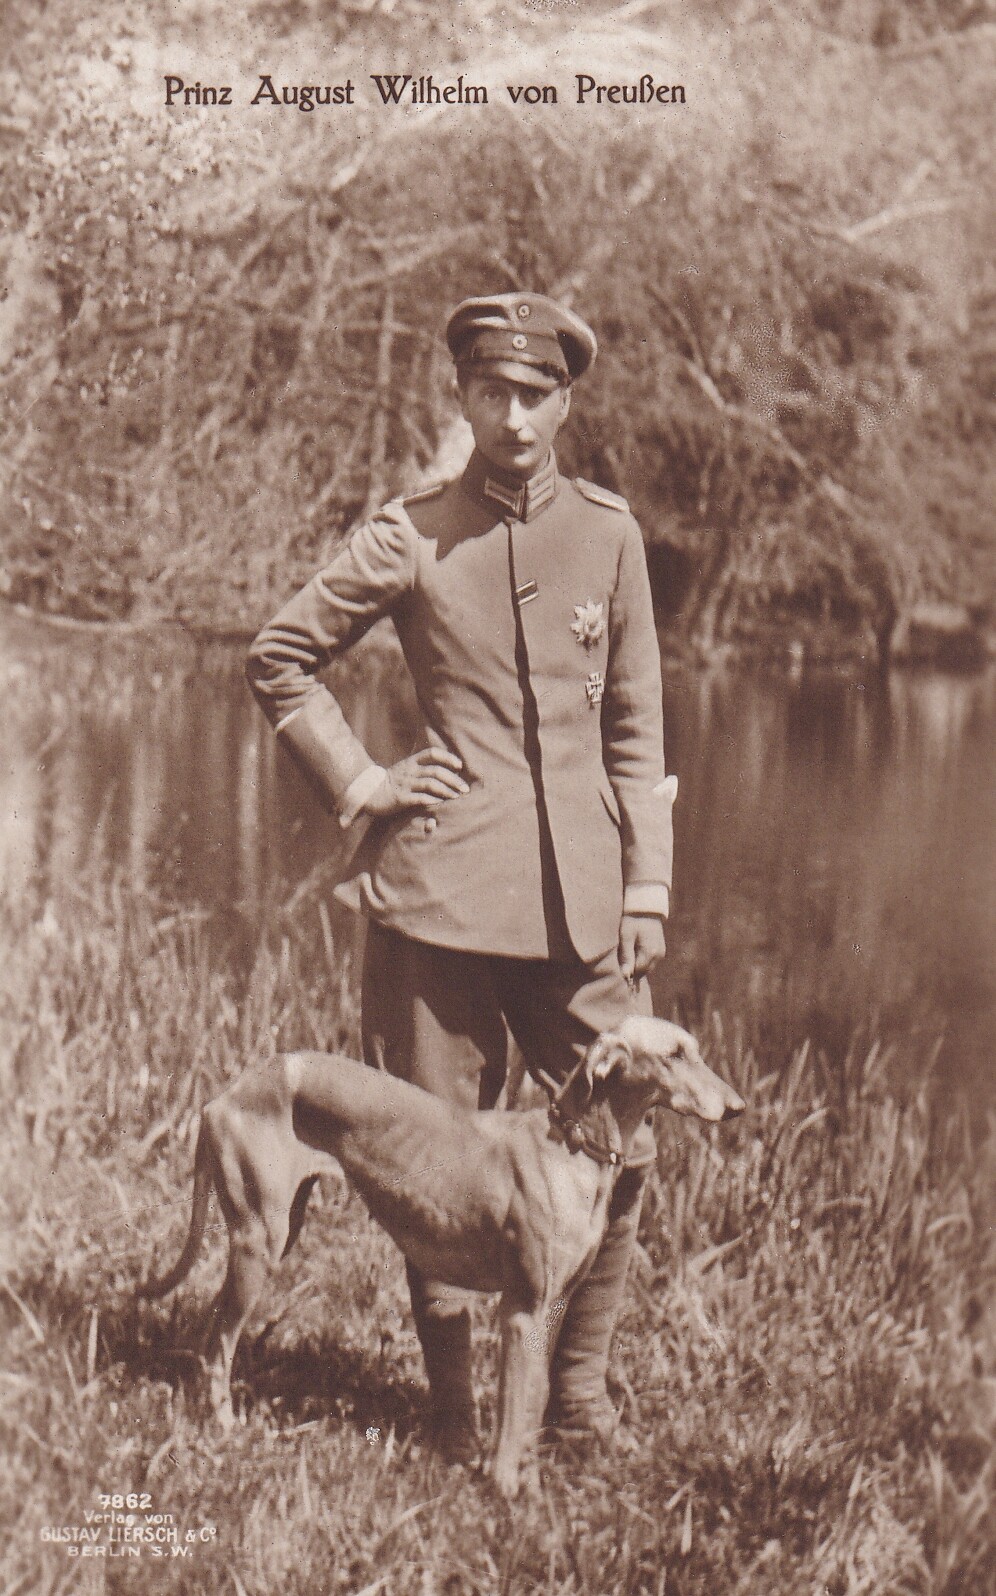 Bildpostkarte mit Foto des Prinzen August Wilhelm von Preußen mit Windhund, 1916 (Schloß Wernigerode GmbH RR-F)